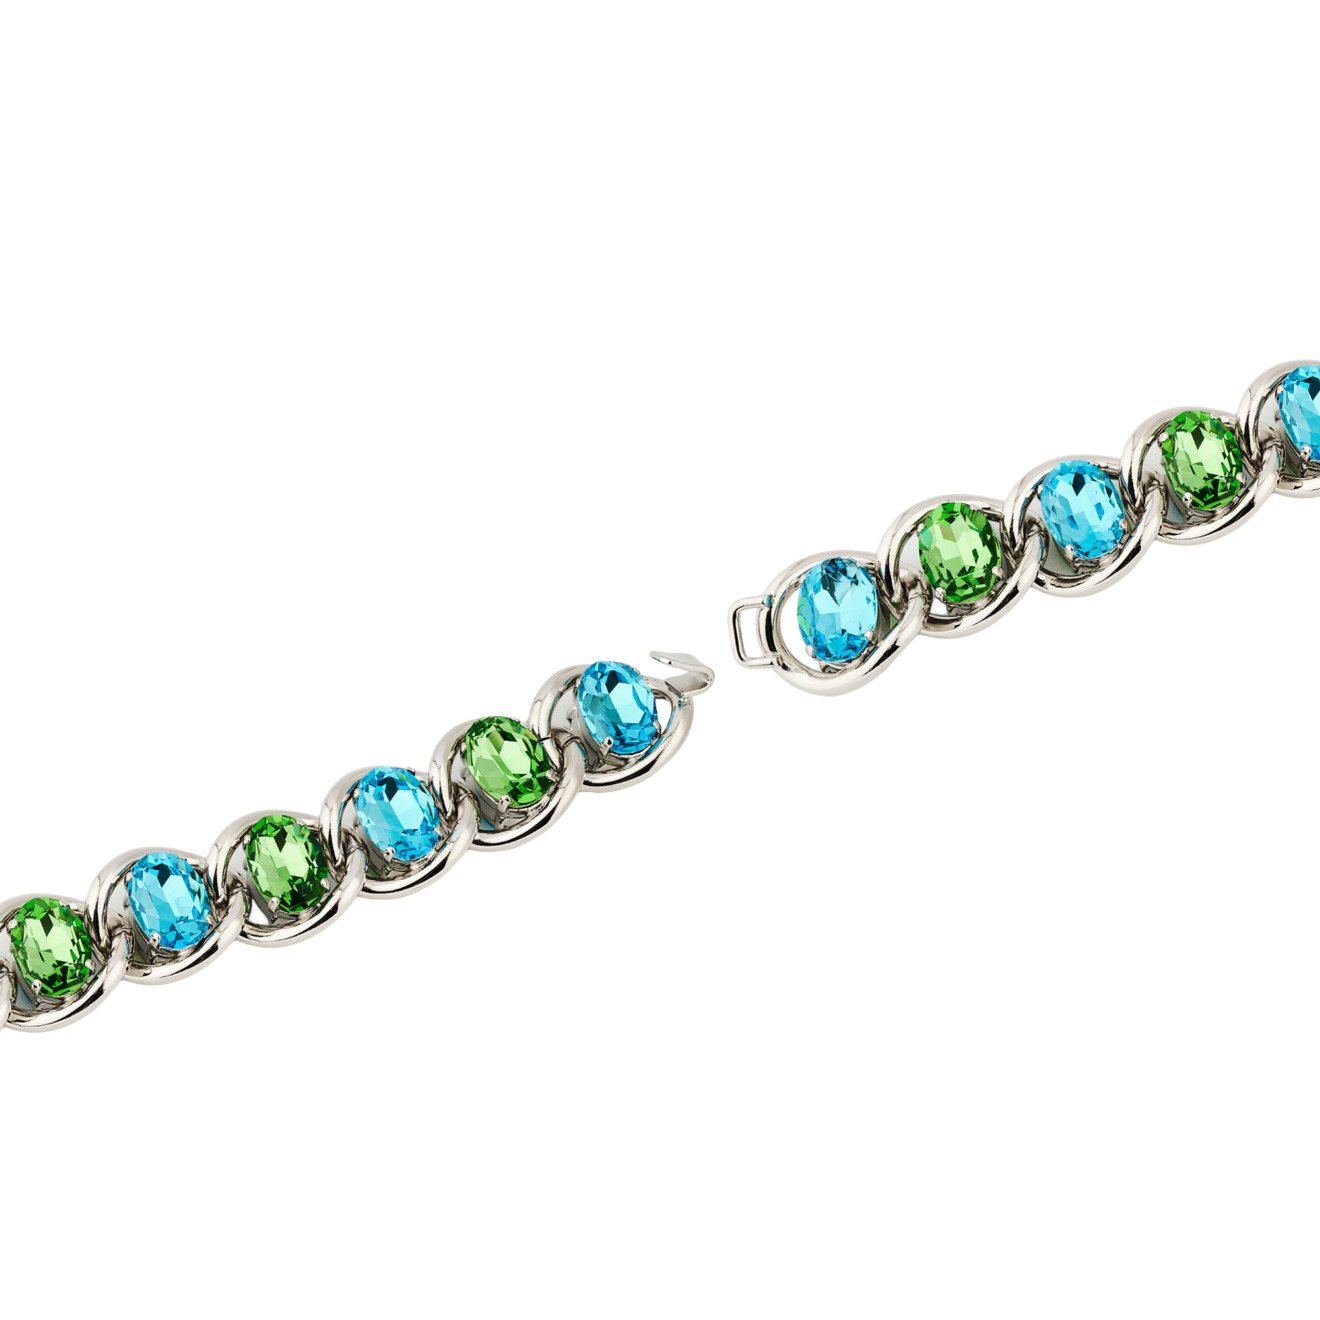 Marni Браслет-цепь с зелено-голубыми кристаллами